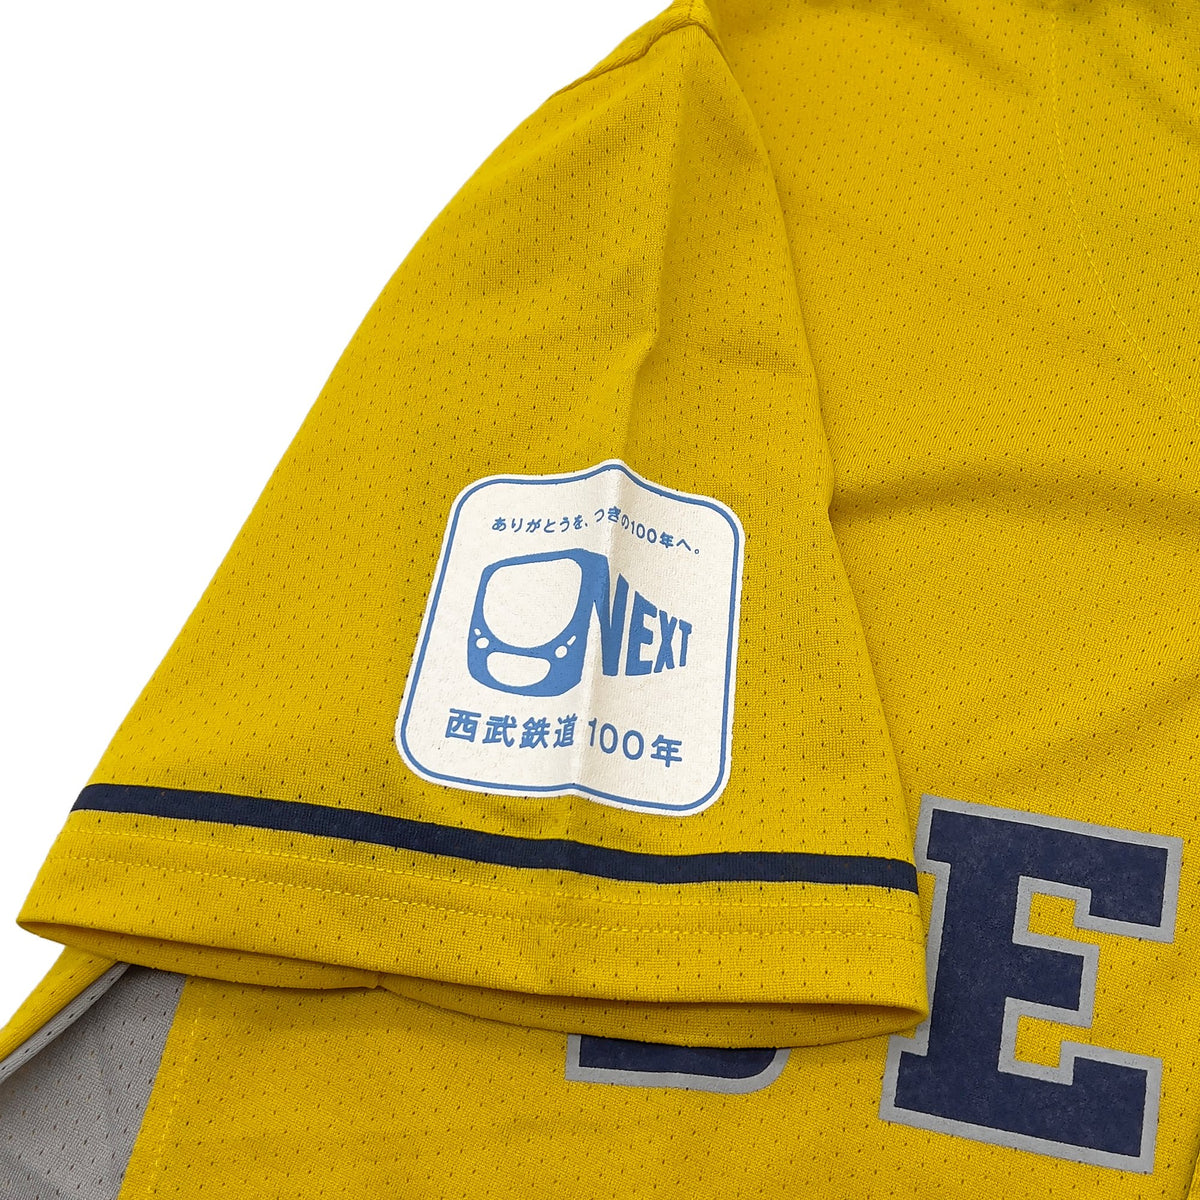 New Retro Saitama Seibu Lions Fan Club NPB Japan Baseball Jersey Yellow - Sugoi JDM